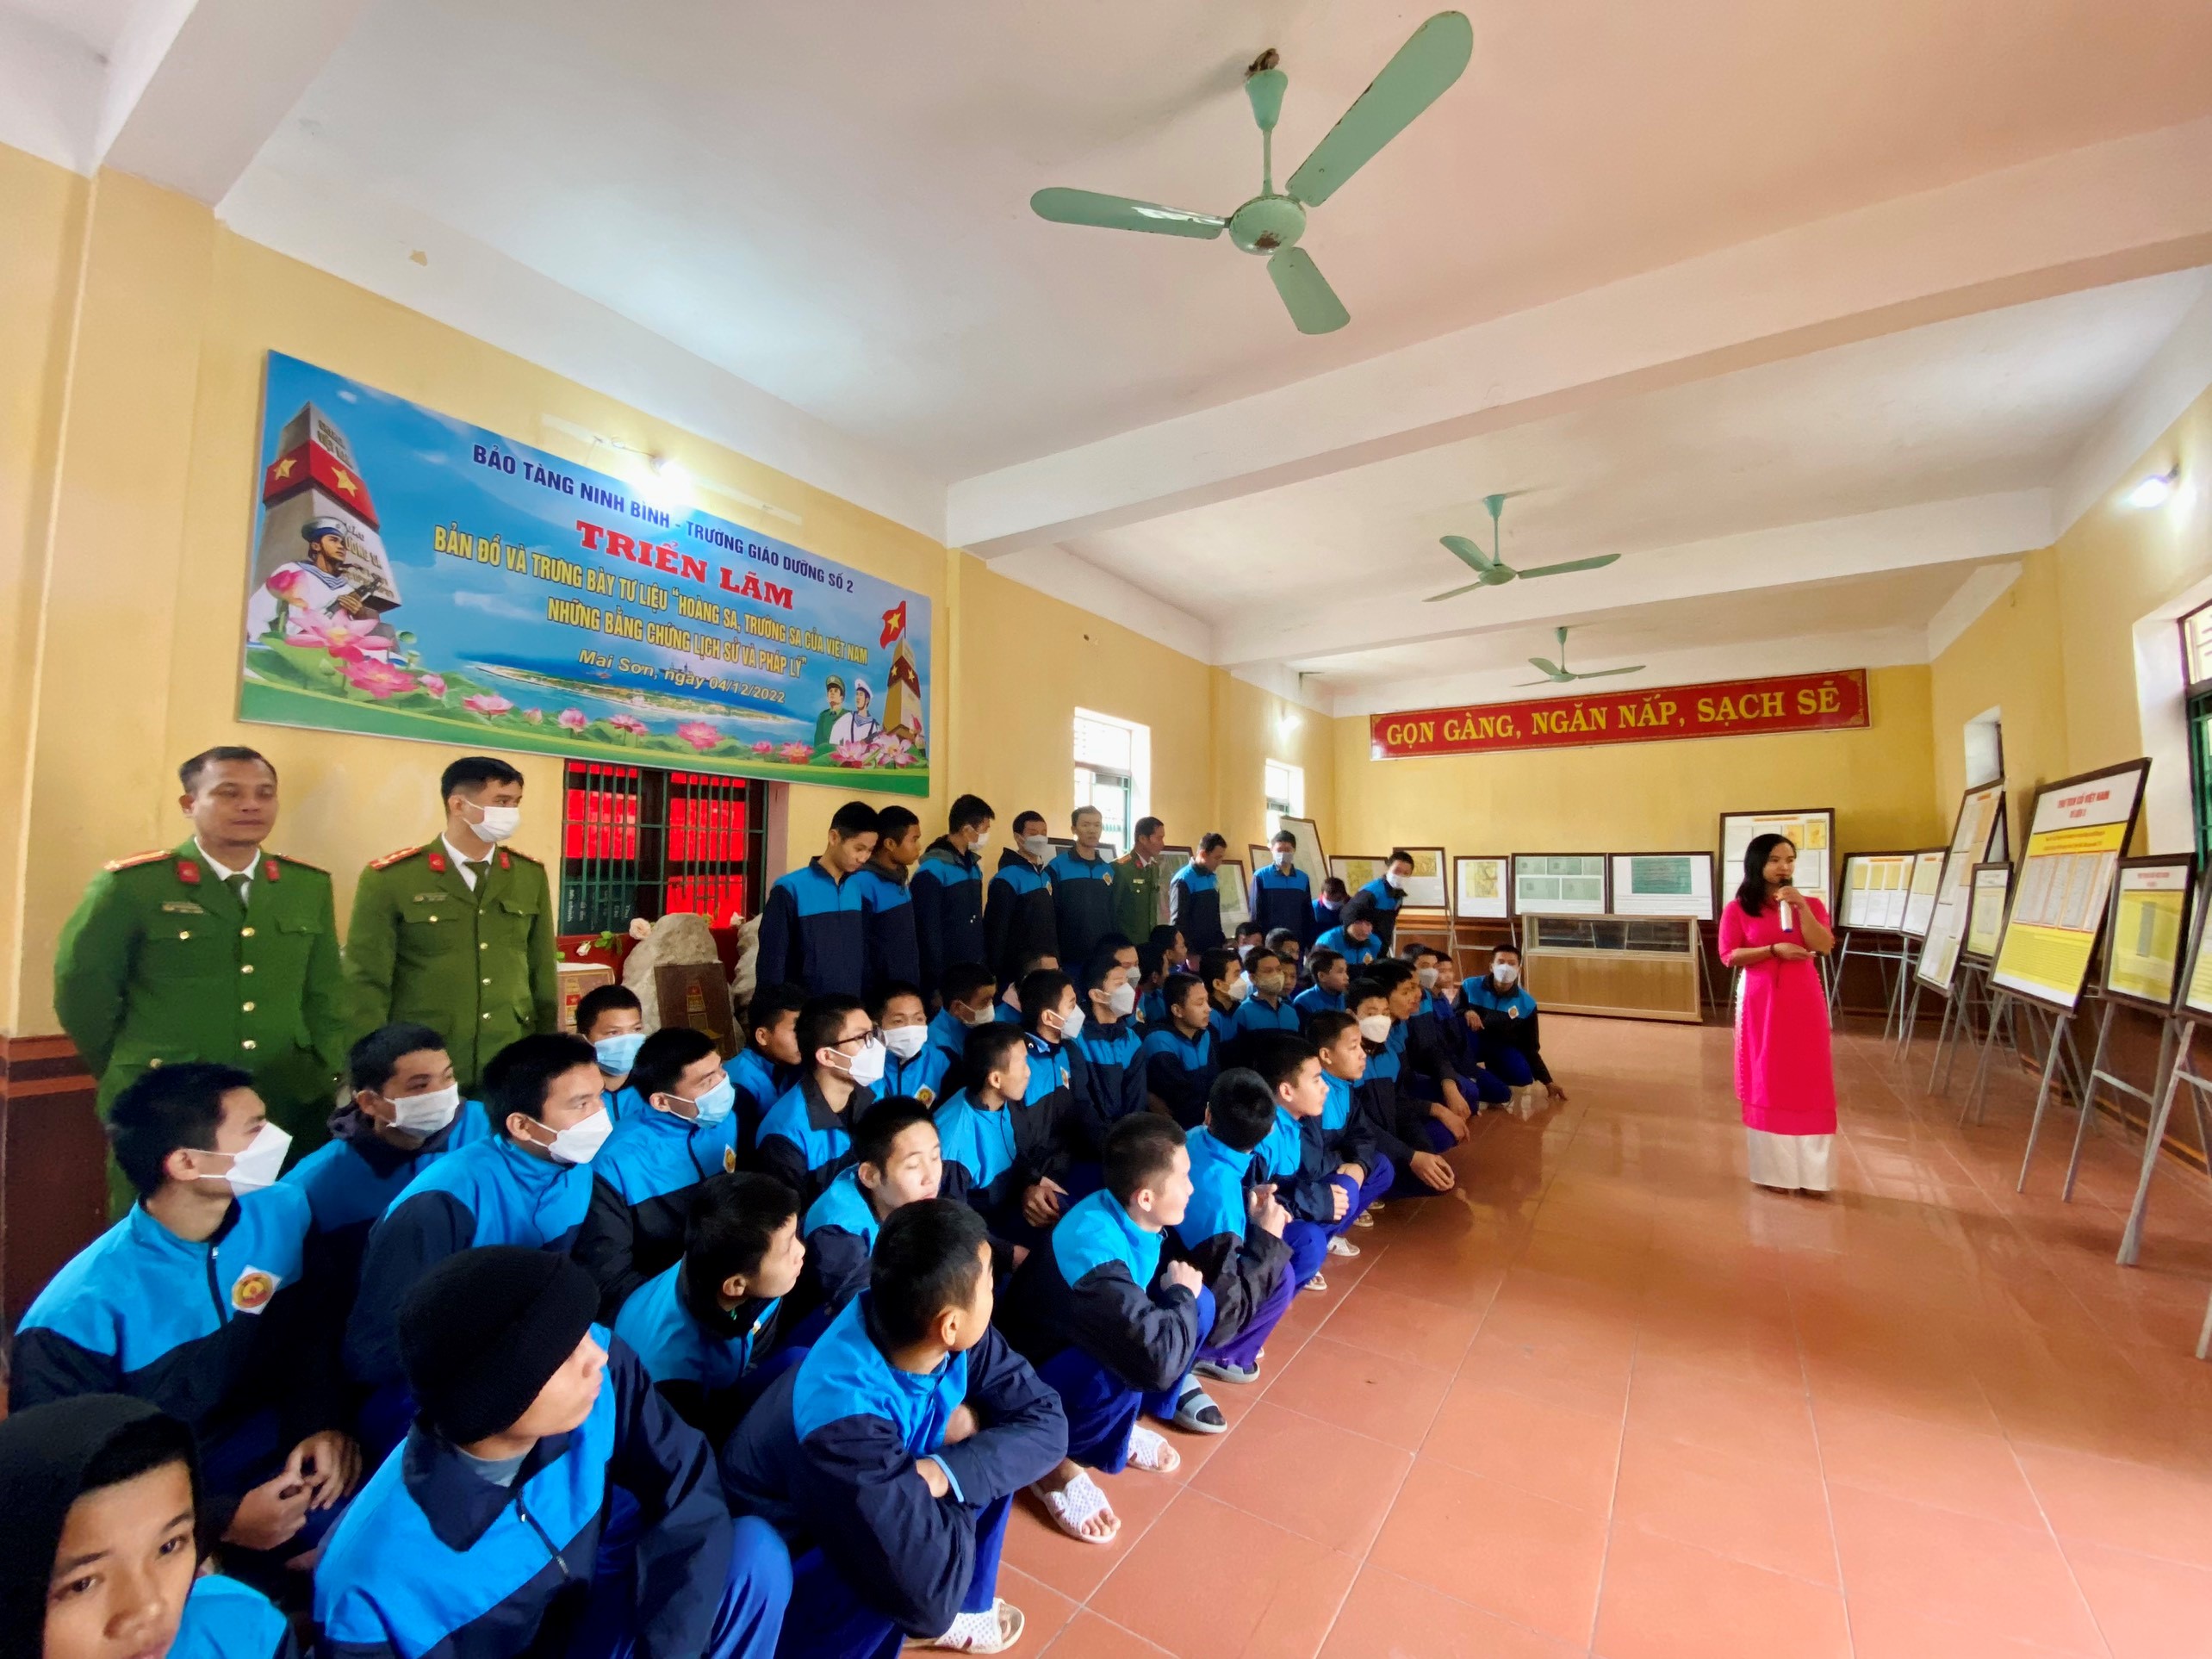 Bảo tàng Ninh Bình và Trường Giáo dưỡng số 2 phối hợp triển lãm bản đồ và trưng bày tư liệu “Hoàng Sa, Trường sa của Việt Nam - Những bằng chứng lịch sử pháp lý”